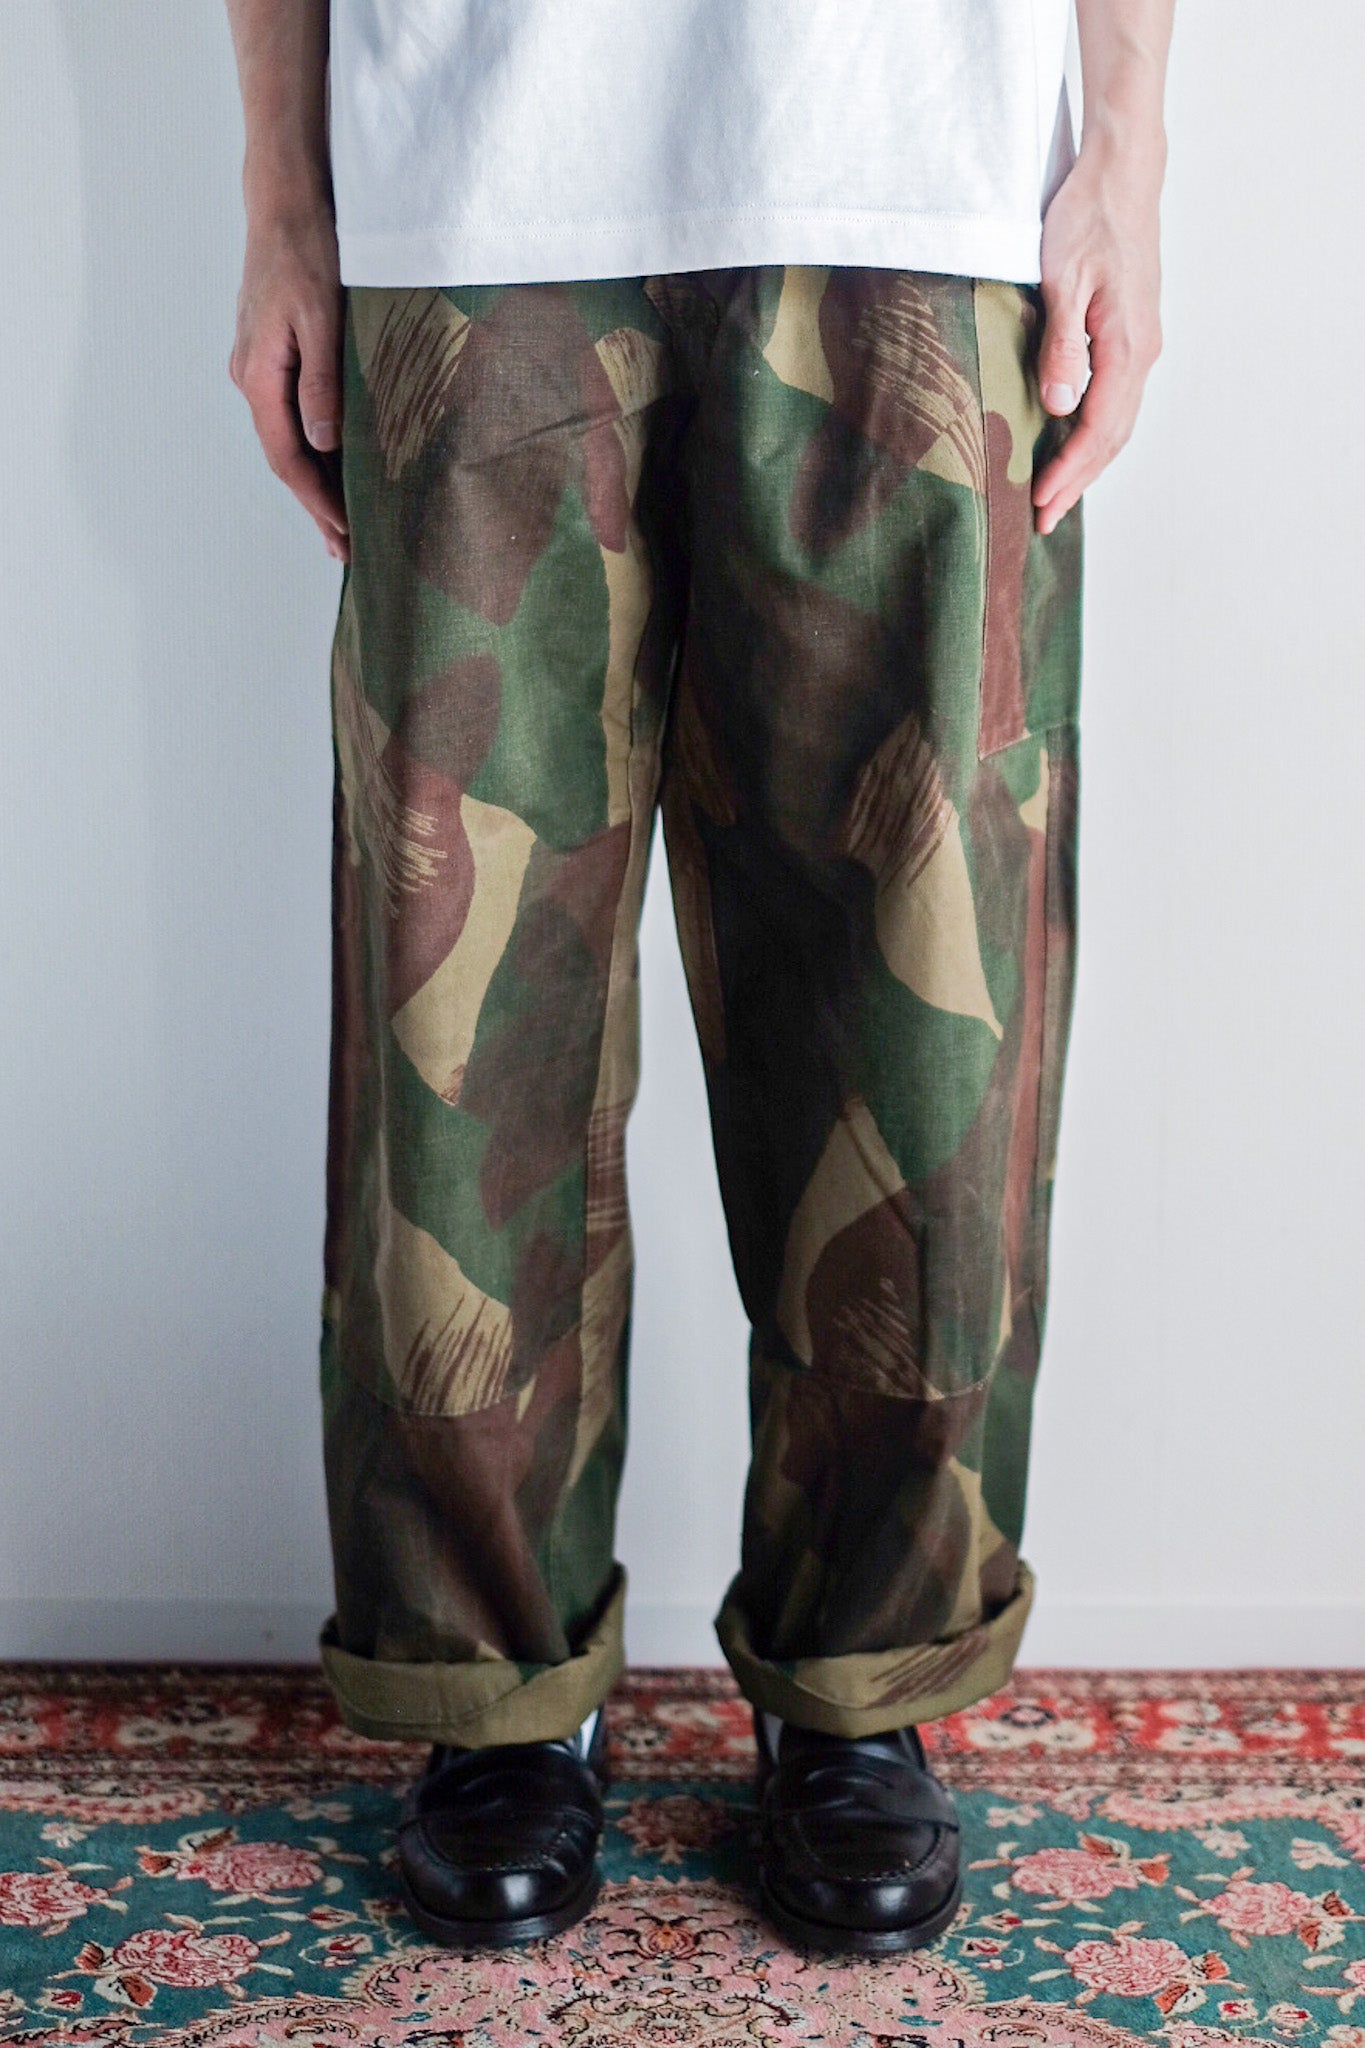 [〜50年代]比利時陸軍筆觸迷彩褲子大小。3